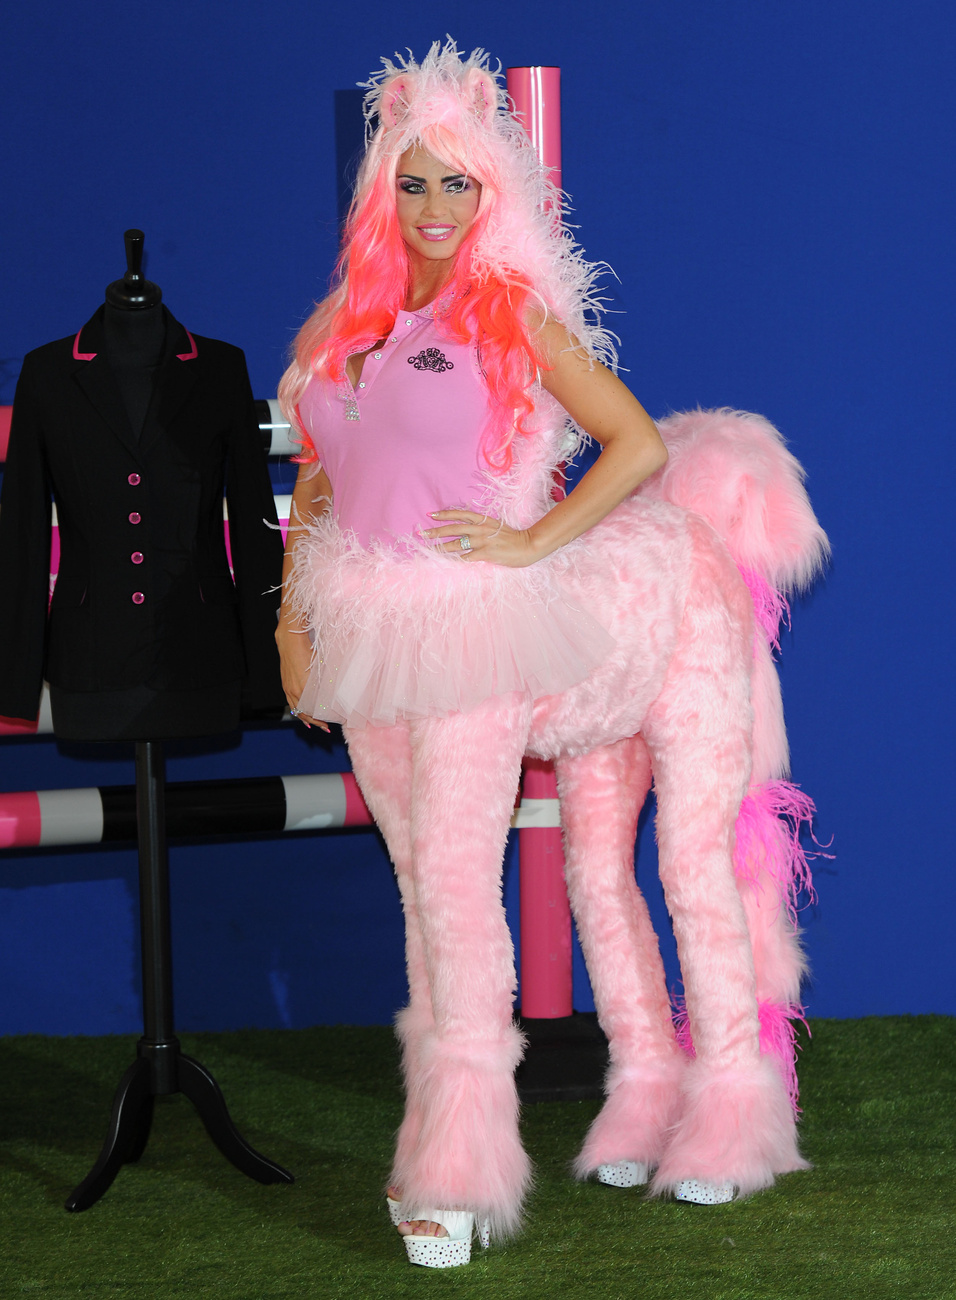 És a legfrissebb, néhány nappal ezelőttről. Price pink kentaurnak öltözve ünnepelte lovaglóruha márkájának (KP Equestrian) ötödik évfordulóját Londonban